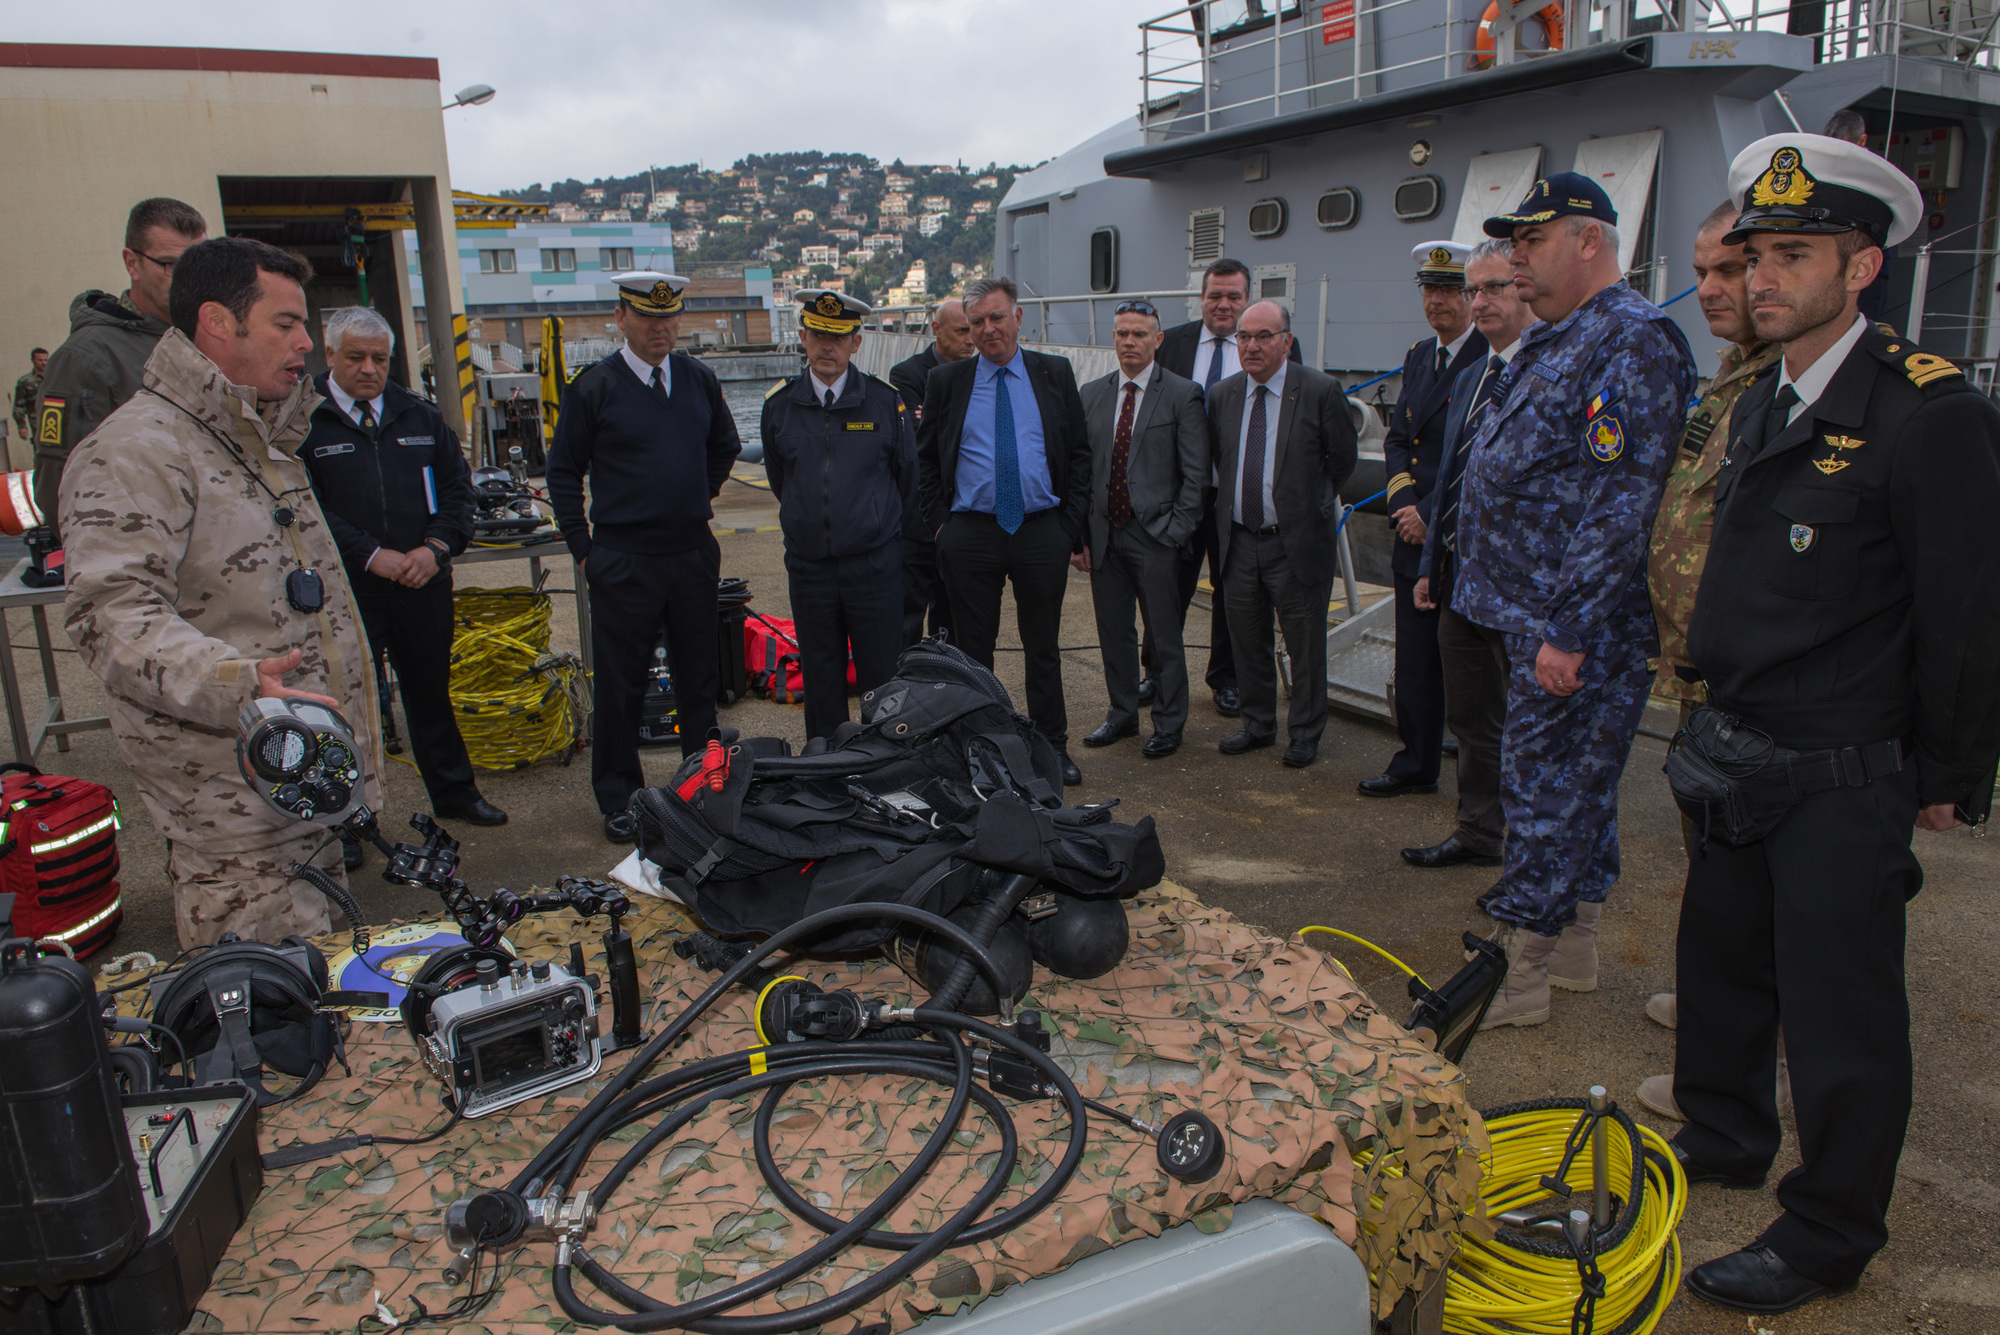 Présentation de matériels de plongée à des officiers de marine étrangers